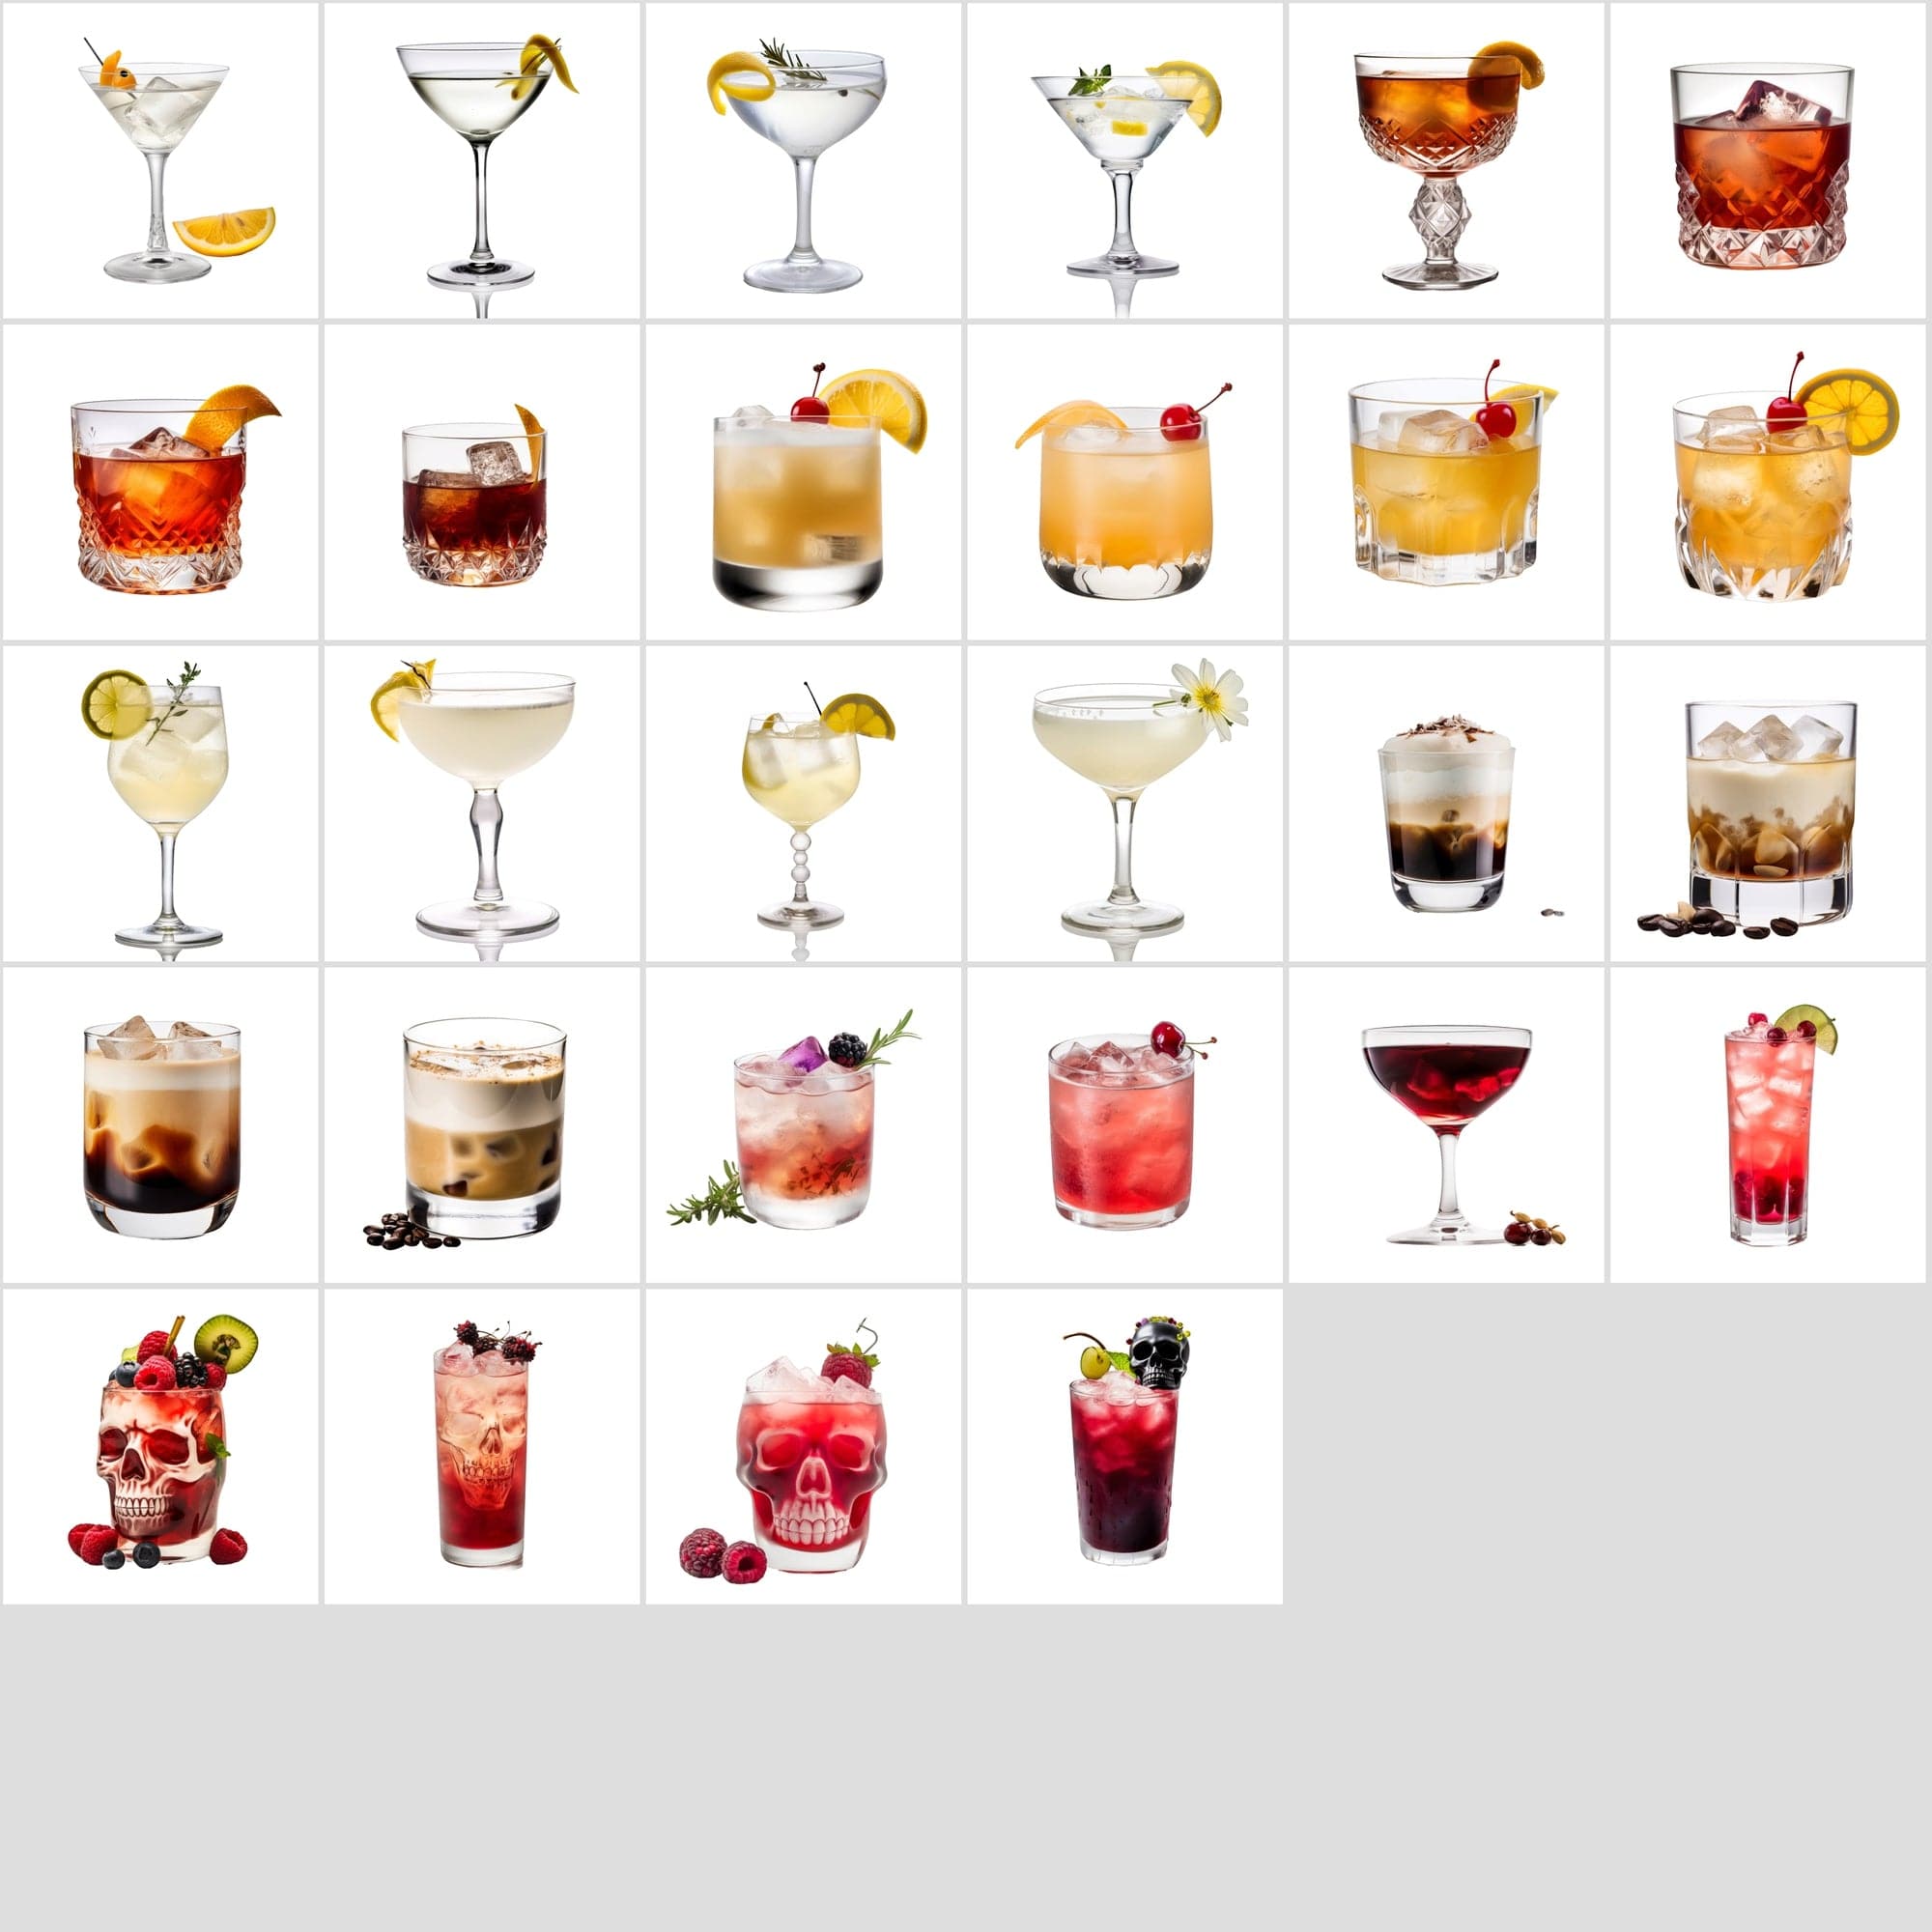 385 Cocktail Images with Transparent Background Digital Download Sumobundle